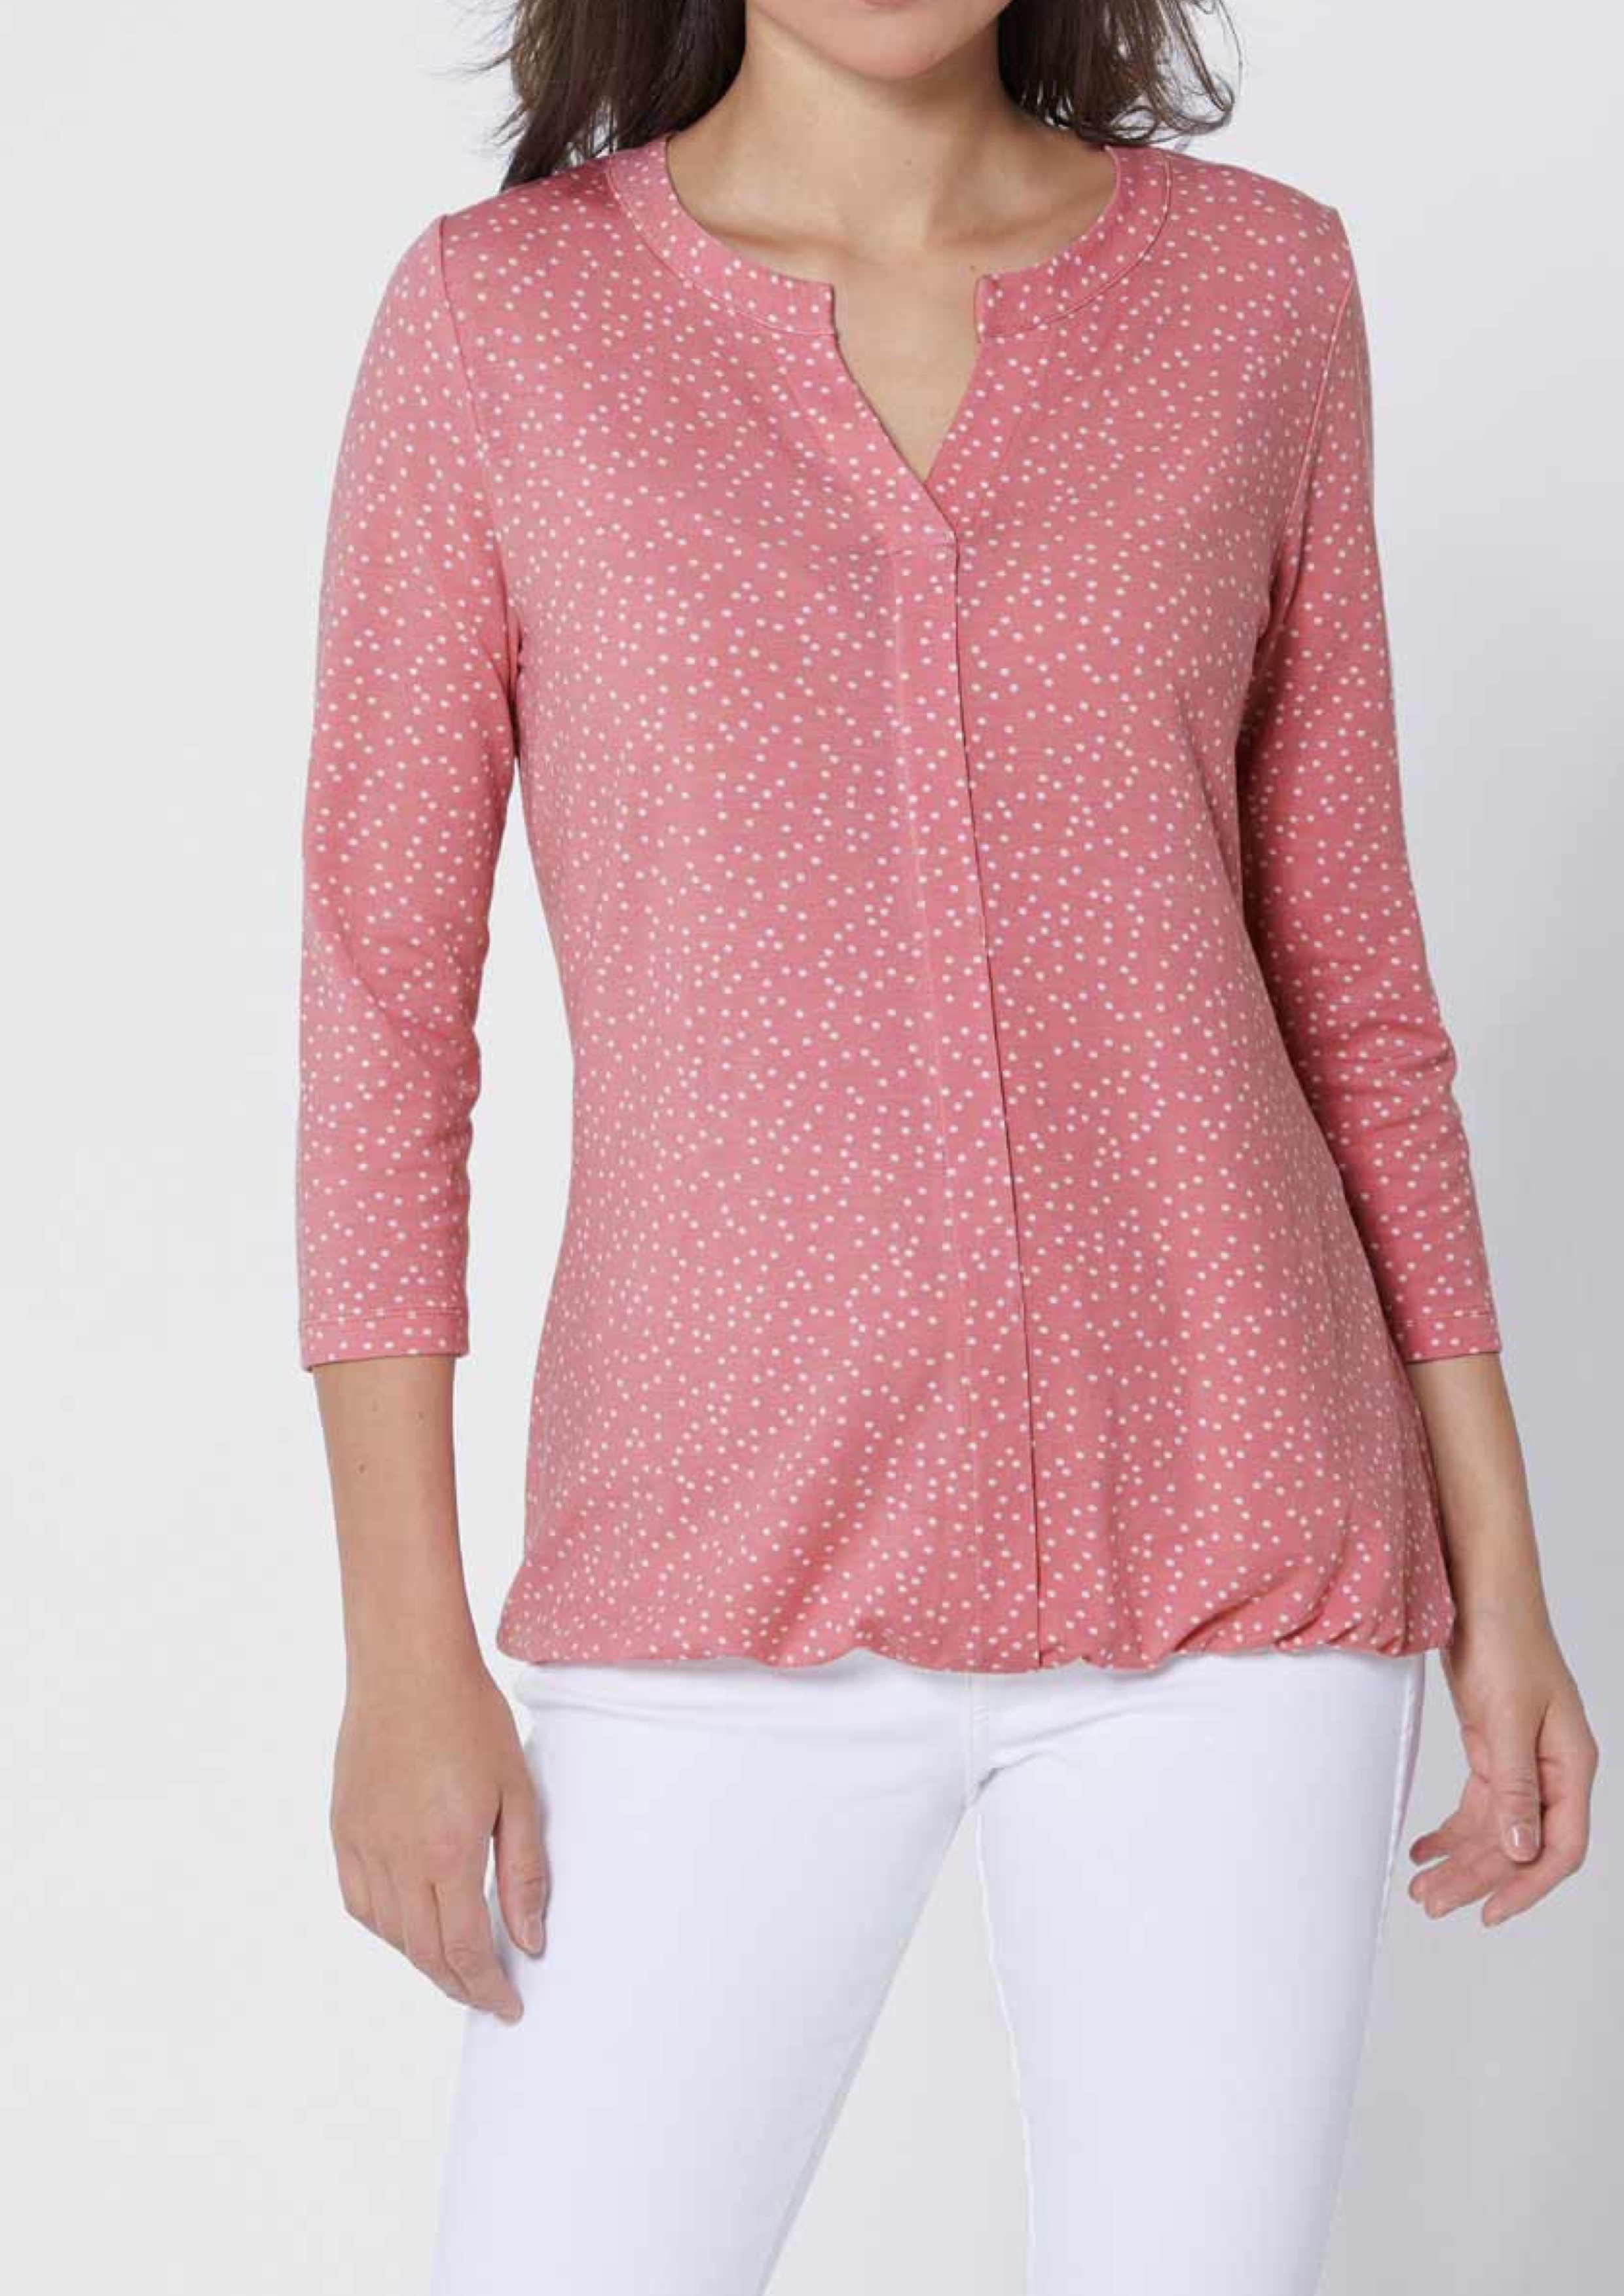 Blúzkové tričko Création L Premium, ružové-ecru